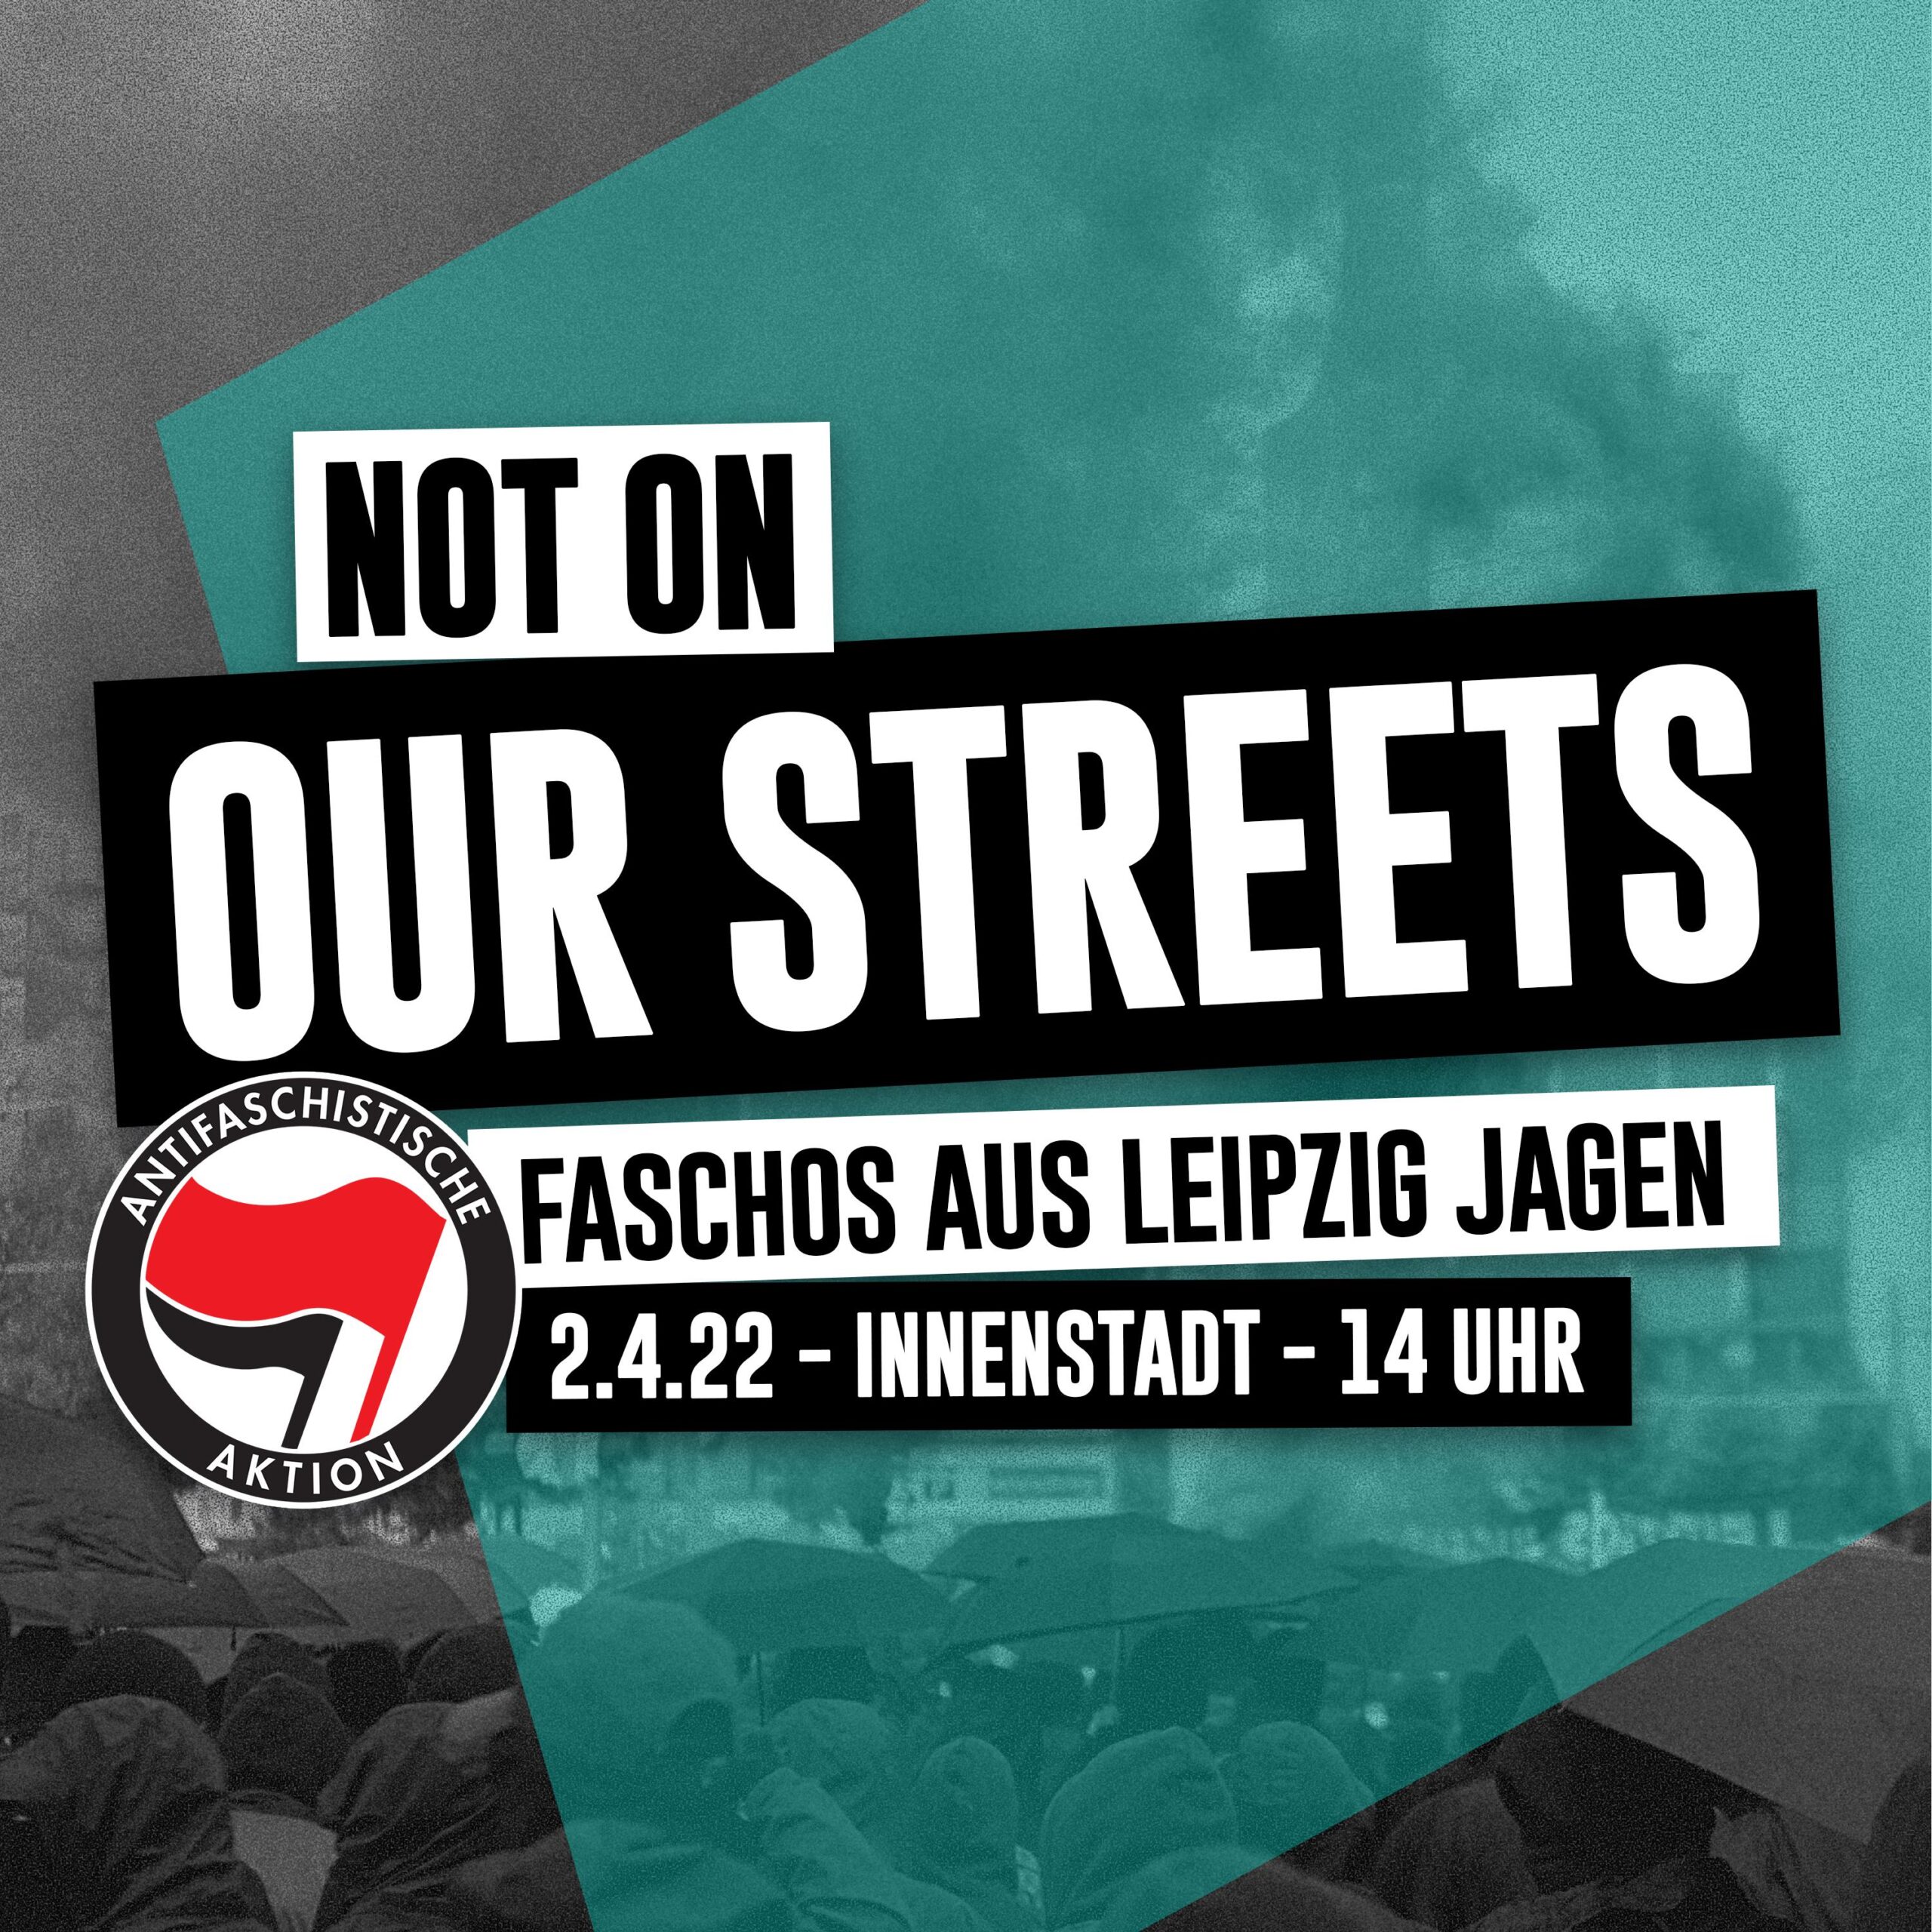 NOT ON OUR STREETS Faschos aus Leipzig jagen